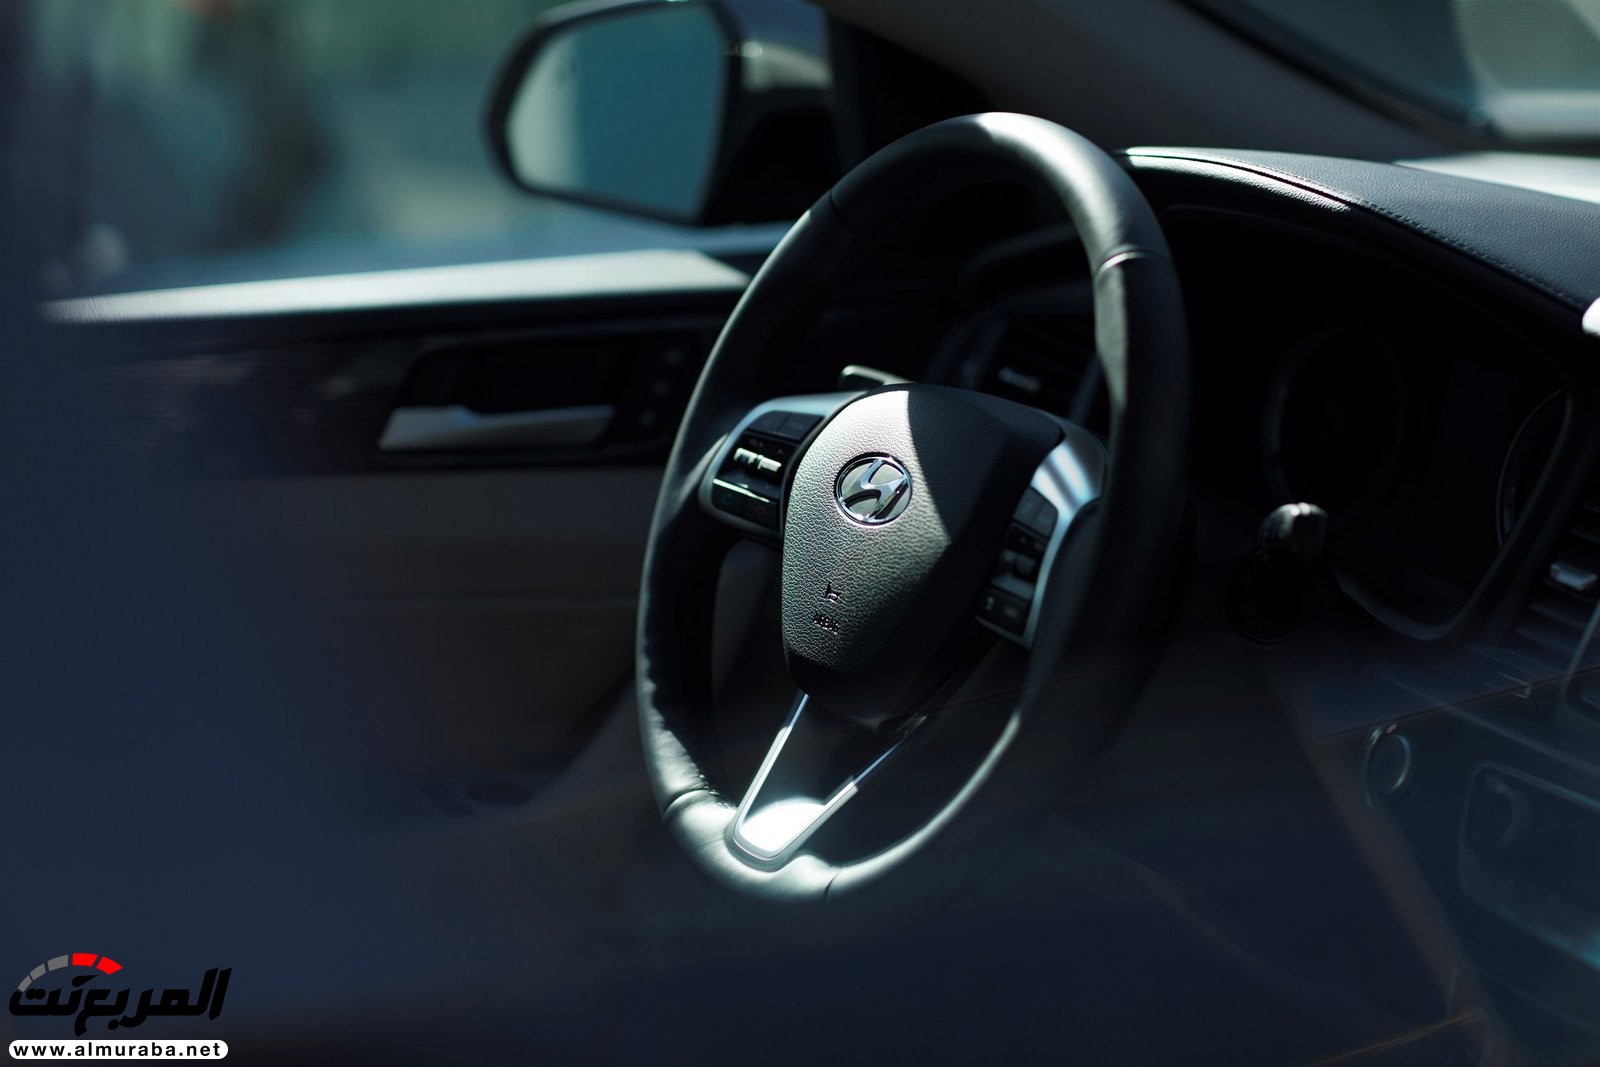 هيونداي سوناتا 2018 المحدثة تحصل على تحديثات خارجية وداخلية "صور وفيديو واسعار" Hyundai Sonata 108